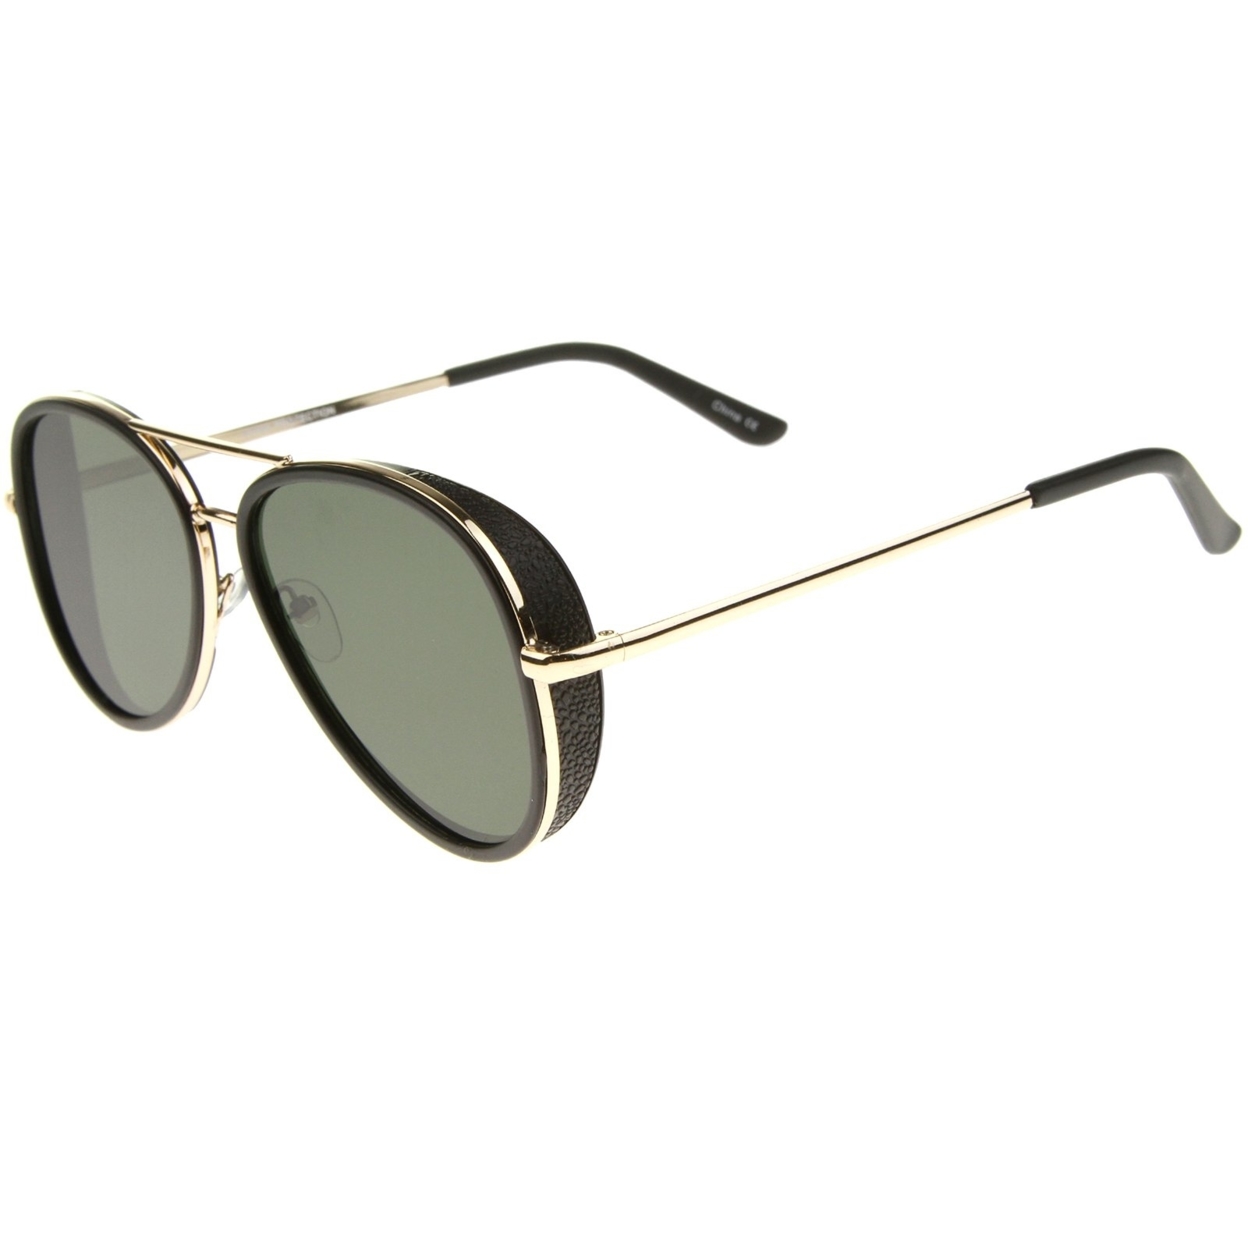 Retro Fashion Side Cover Flat Lens Two-Tone Metal Aviator Sunglasses 53mm - Black-Silver / Smoke